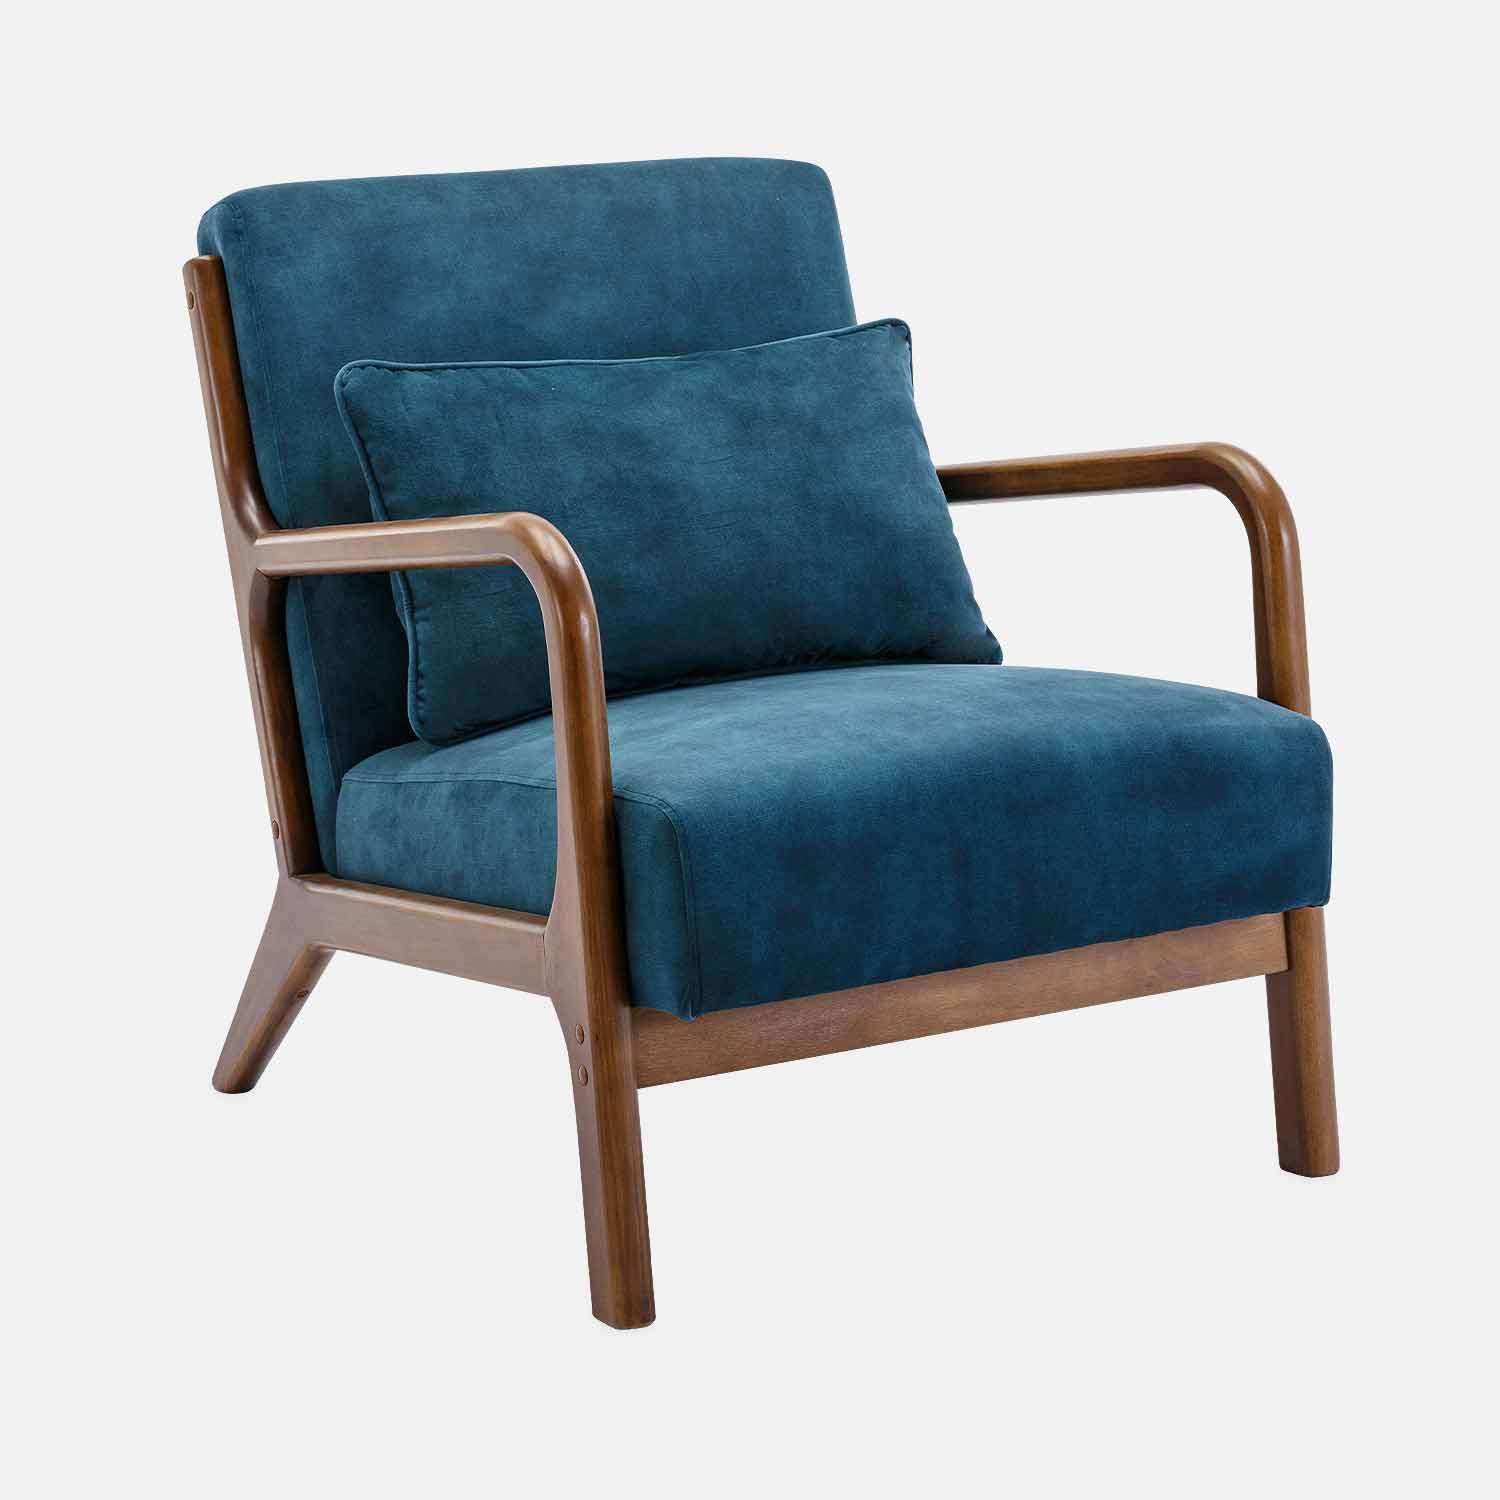 Poltrona em veludo azul petróleo, pernas em madeira de hevea com manchas de nogueira clara, 1 assento reto fixo, pernas em bússola escandinavas,sweeek,Photo4